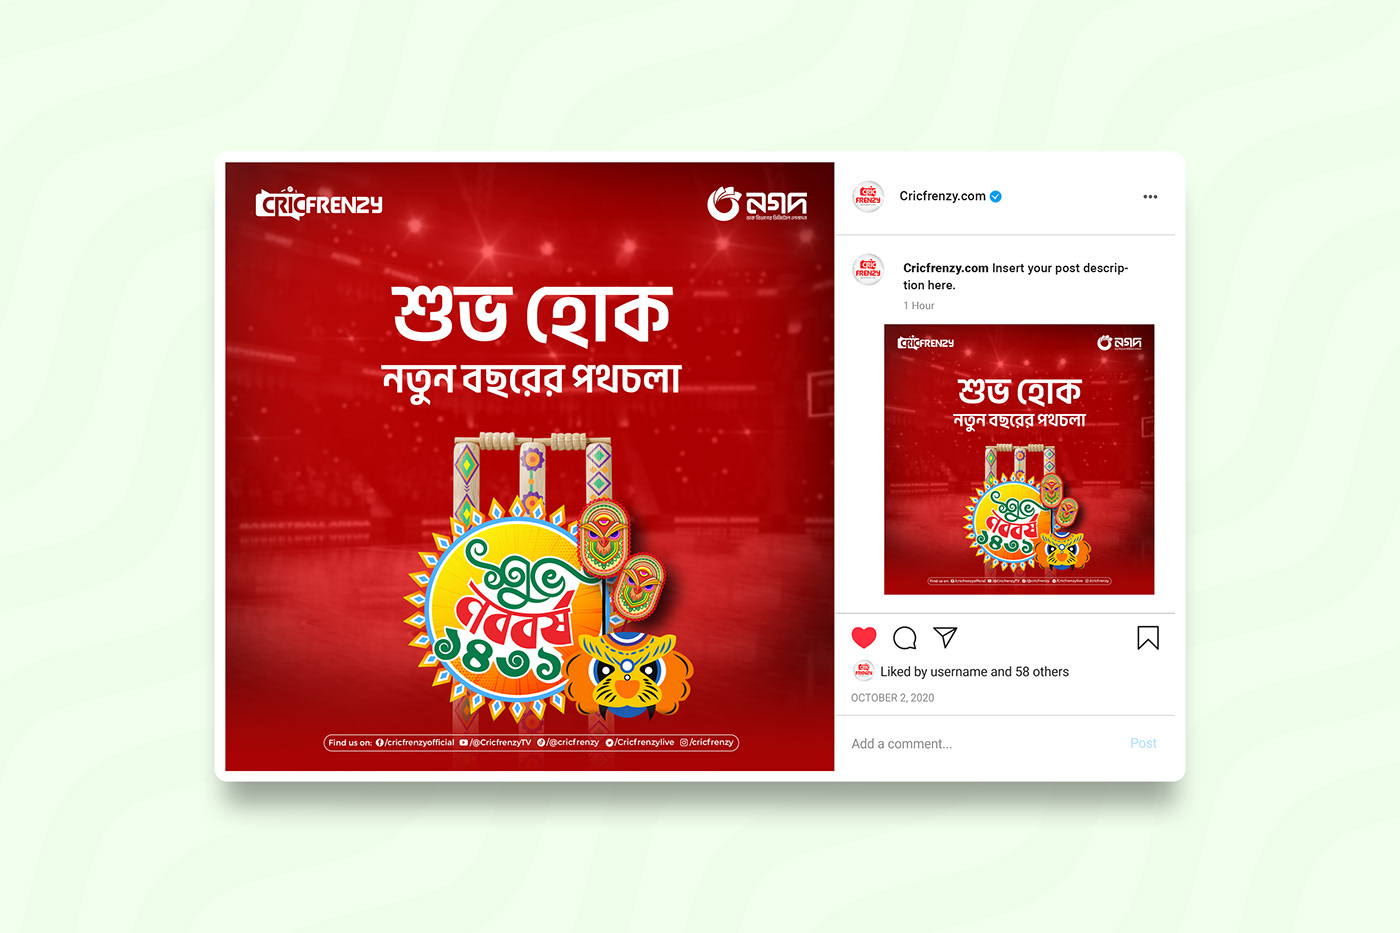 পহেলা বৈশাখ Pohela Boishakh قصة الموكا Bengali New Year boishakh 메이저사이트 Bangla festival Poster Design Social media post